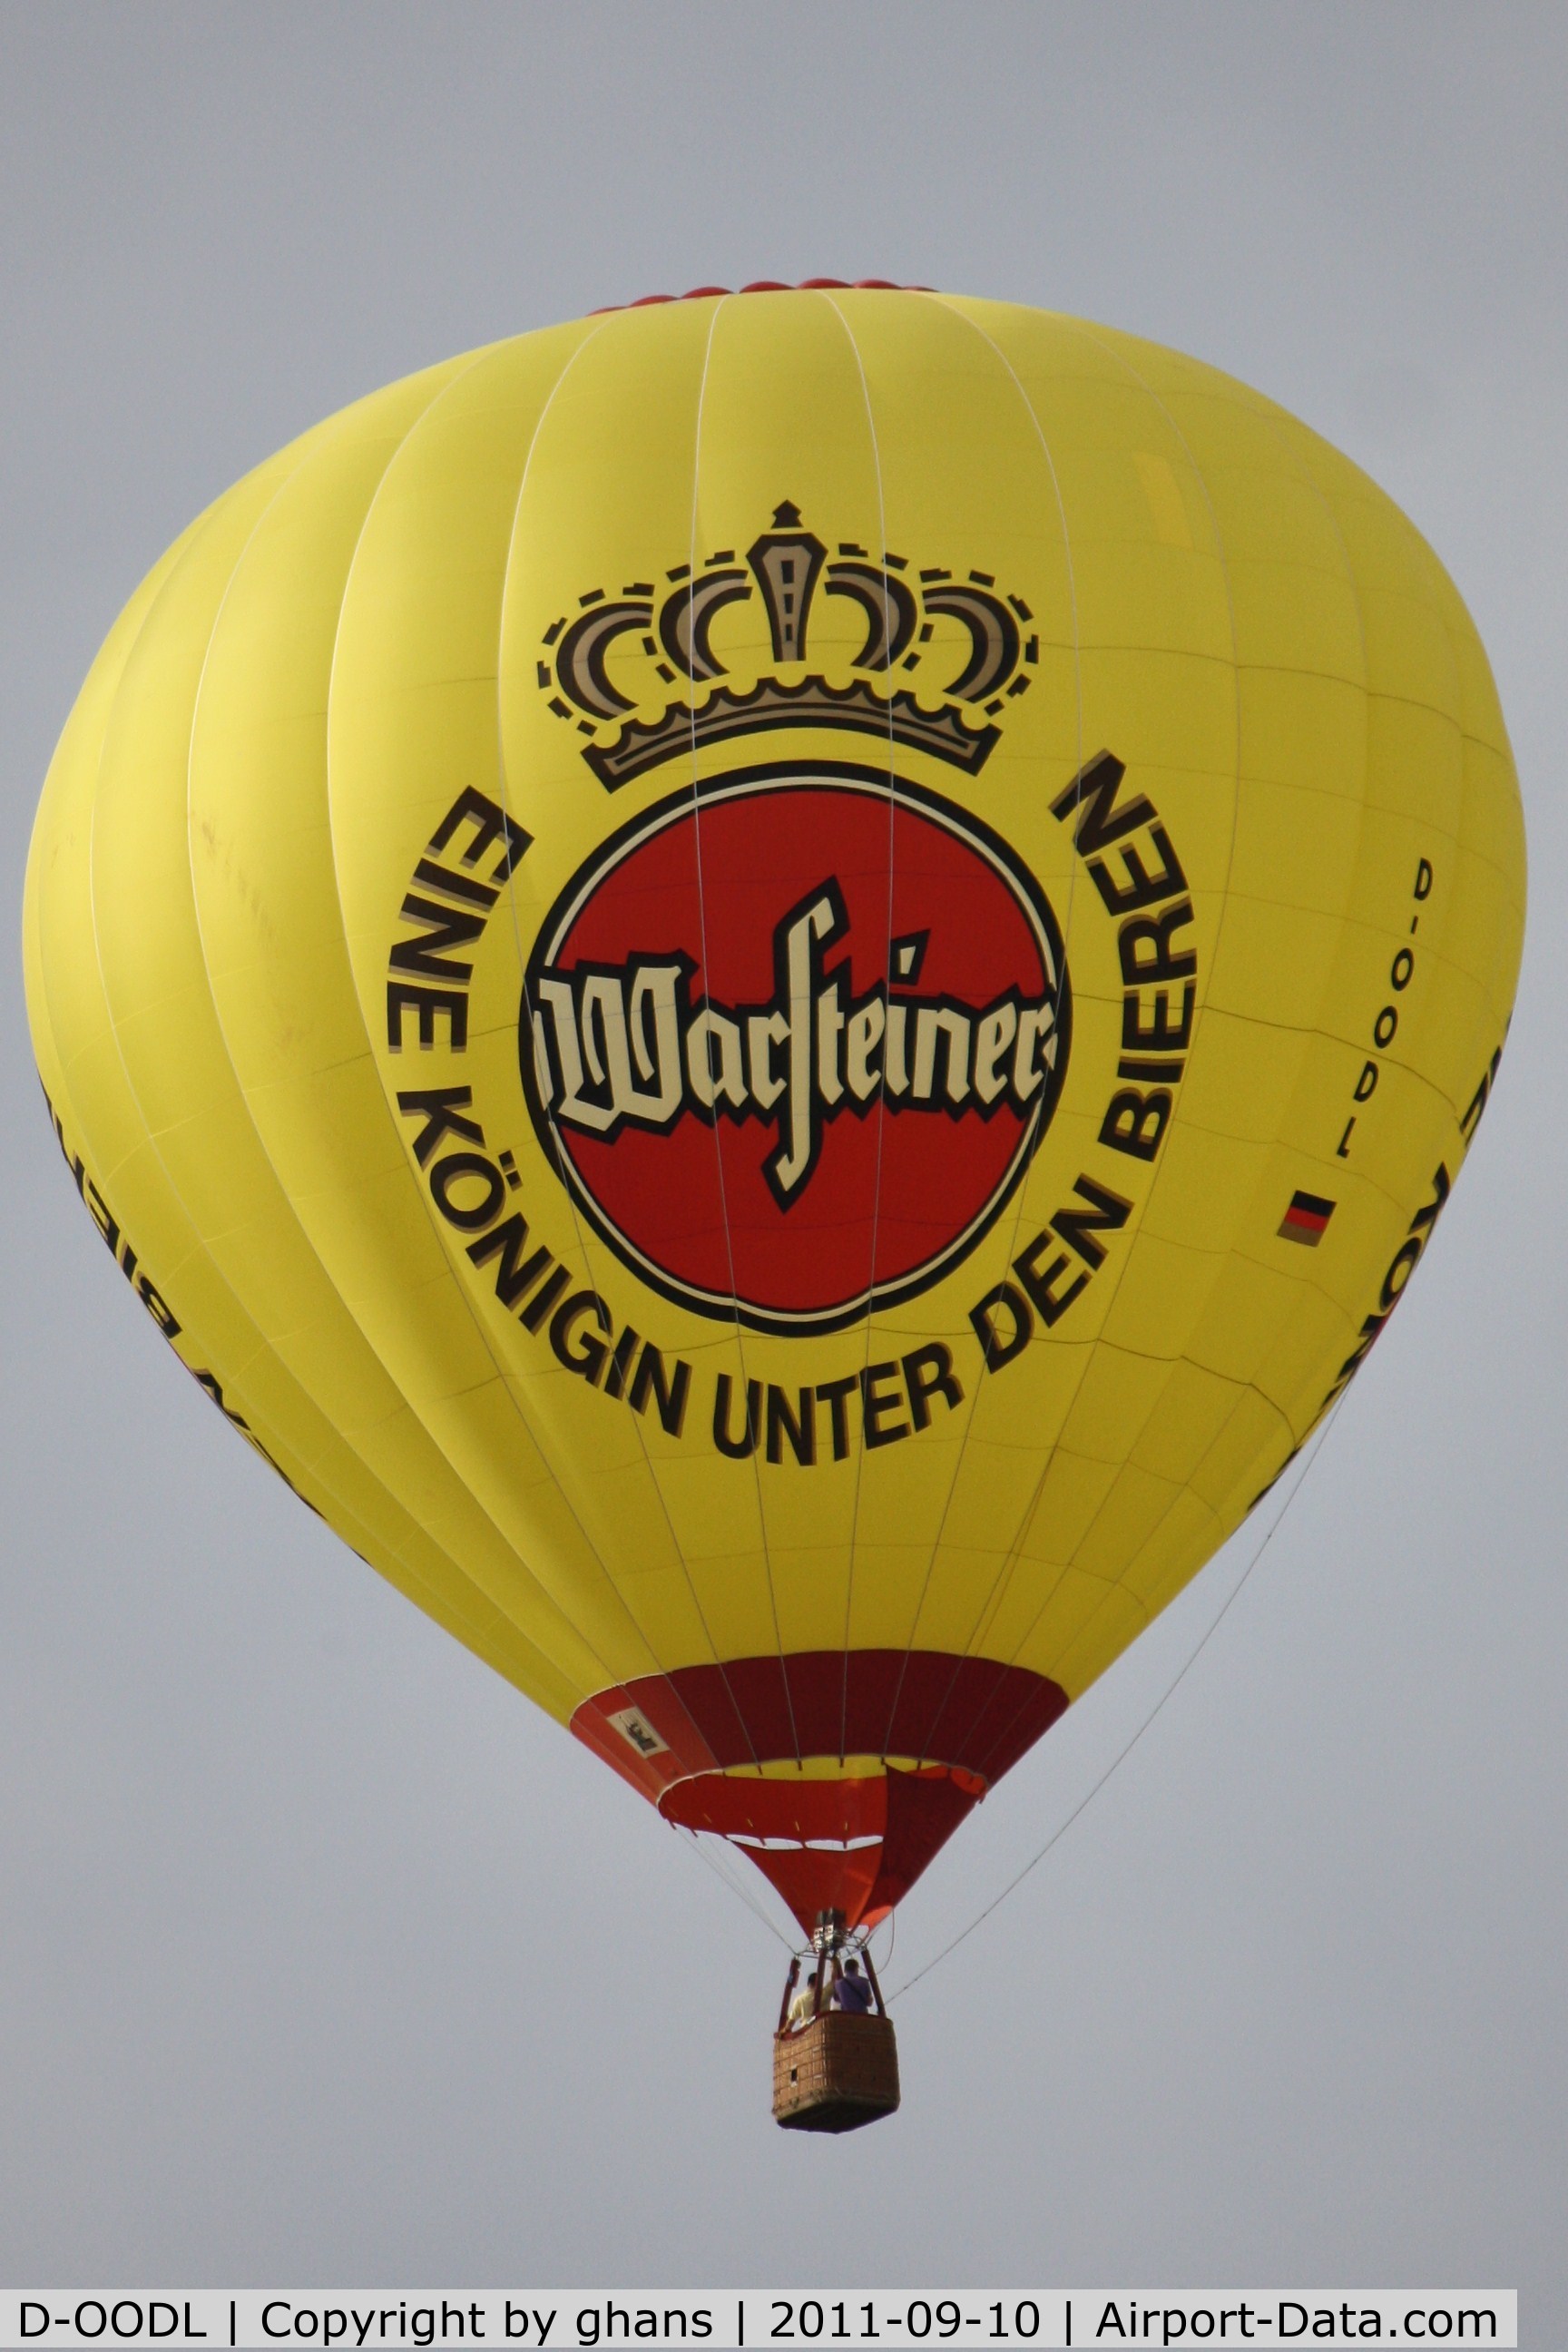 D-OODL, 1998 Schroeder Fire Balloons G30/24 C/N 683, WIM 2011
'Warsteiner'